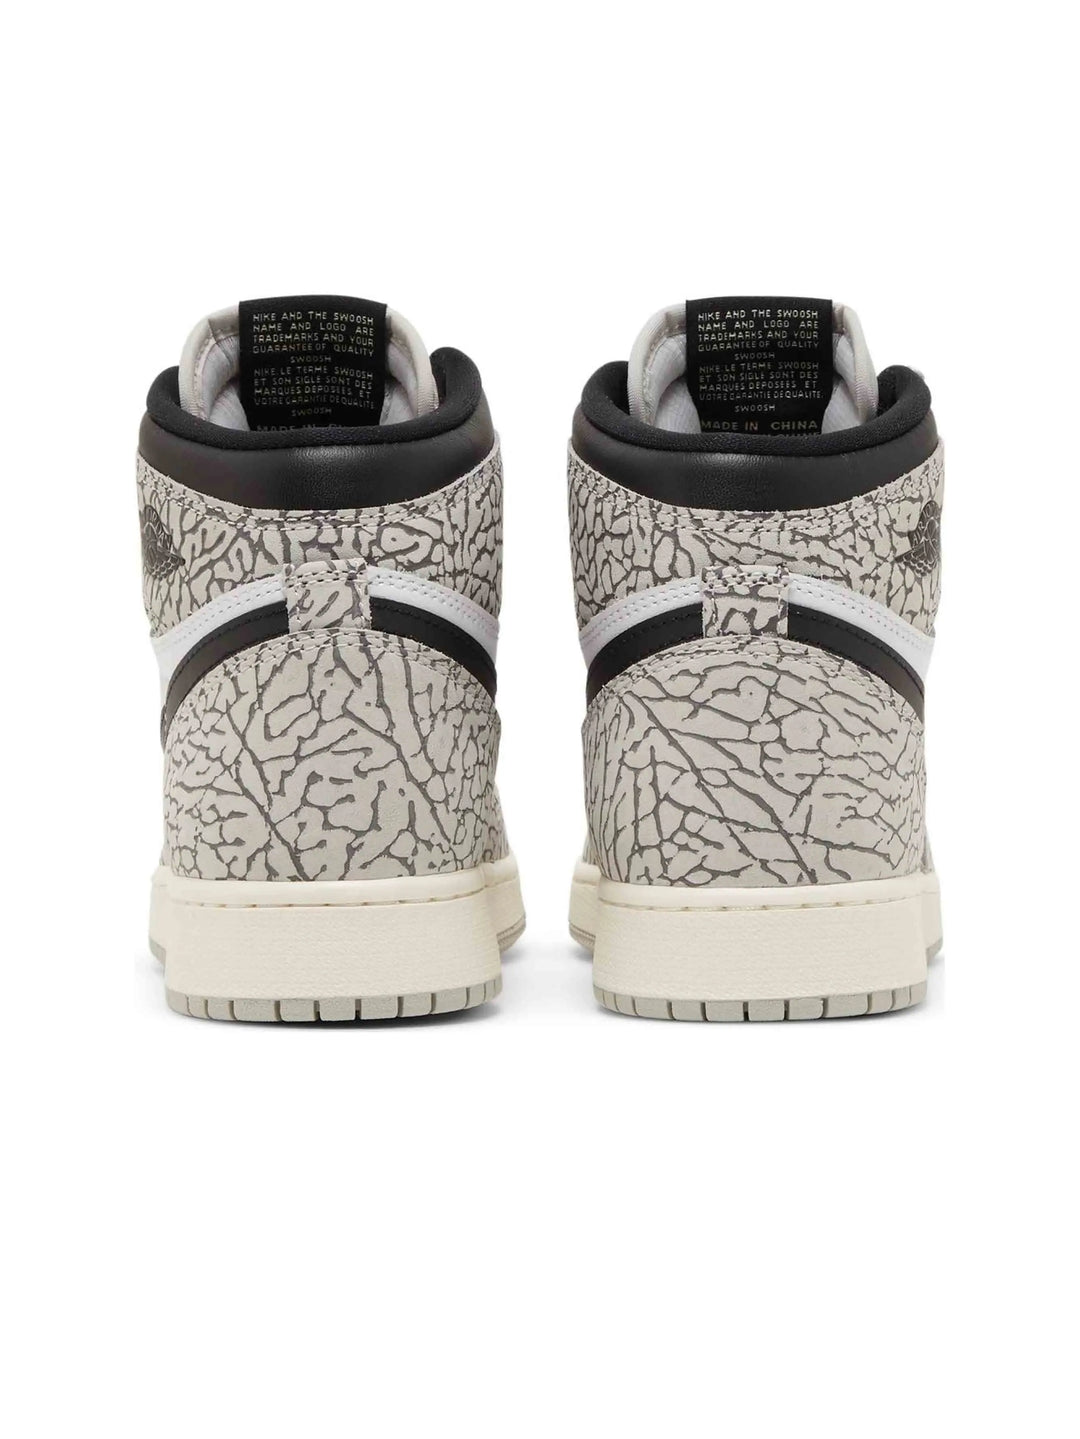 Nike Air Jordan 1 Retro High OG White Cement (GS) Prior